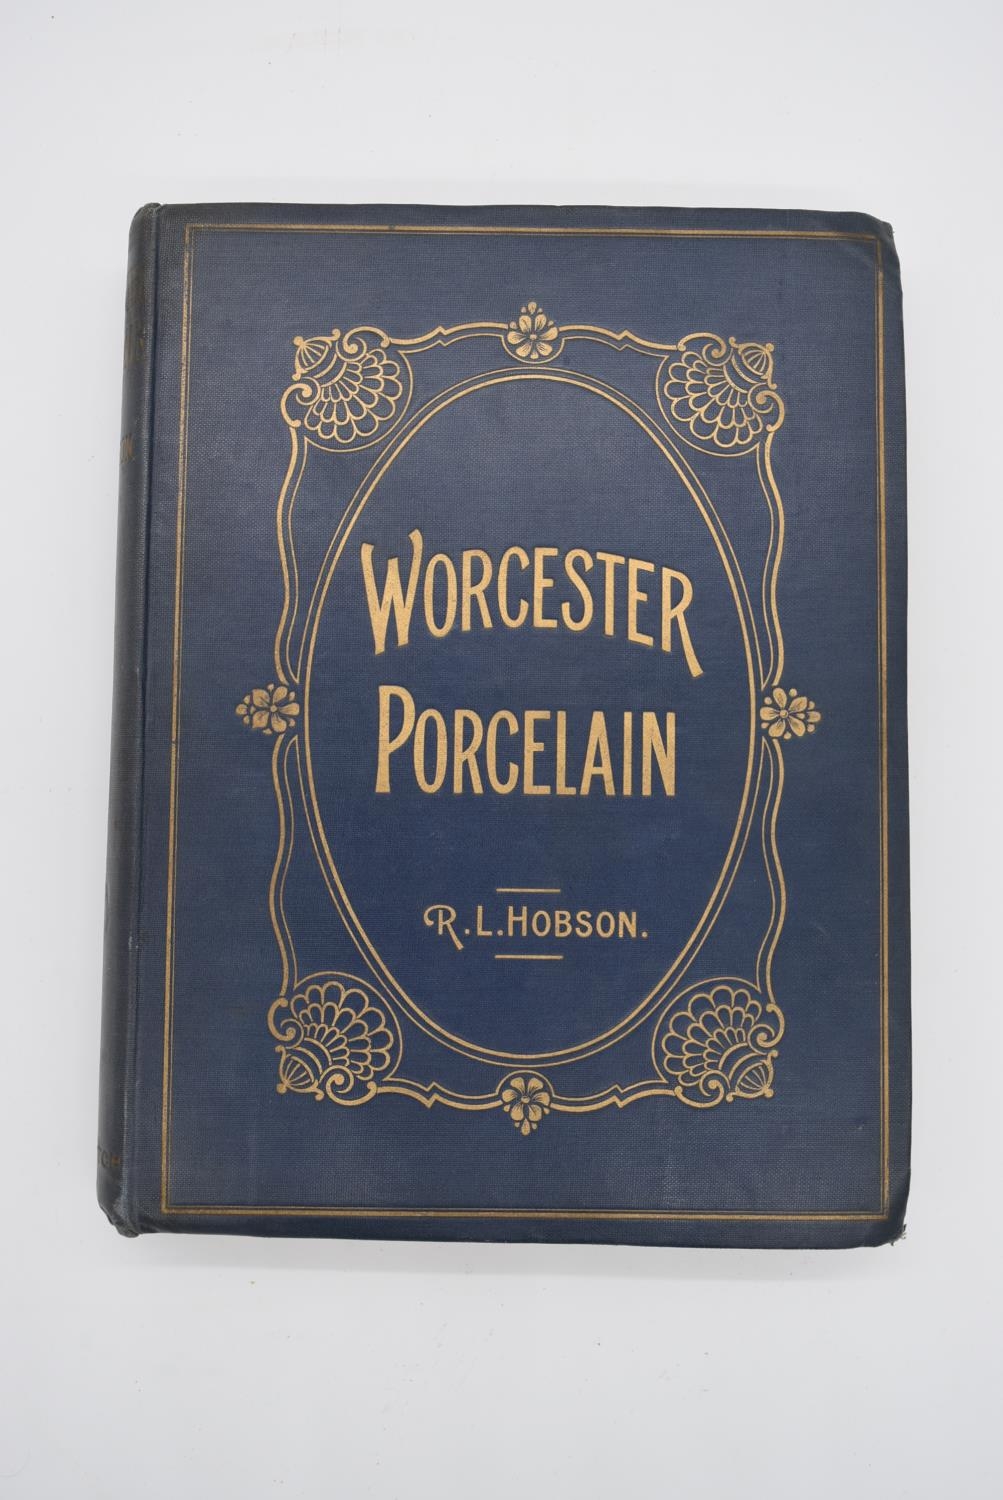 R. L. Hobson, Worcester Porcelain, blue cloth bound hardback volume with gilt lettering, published